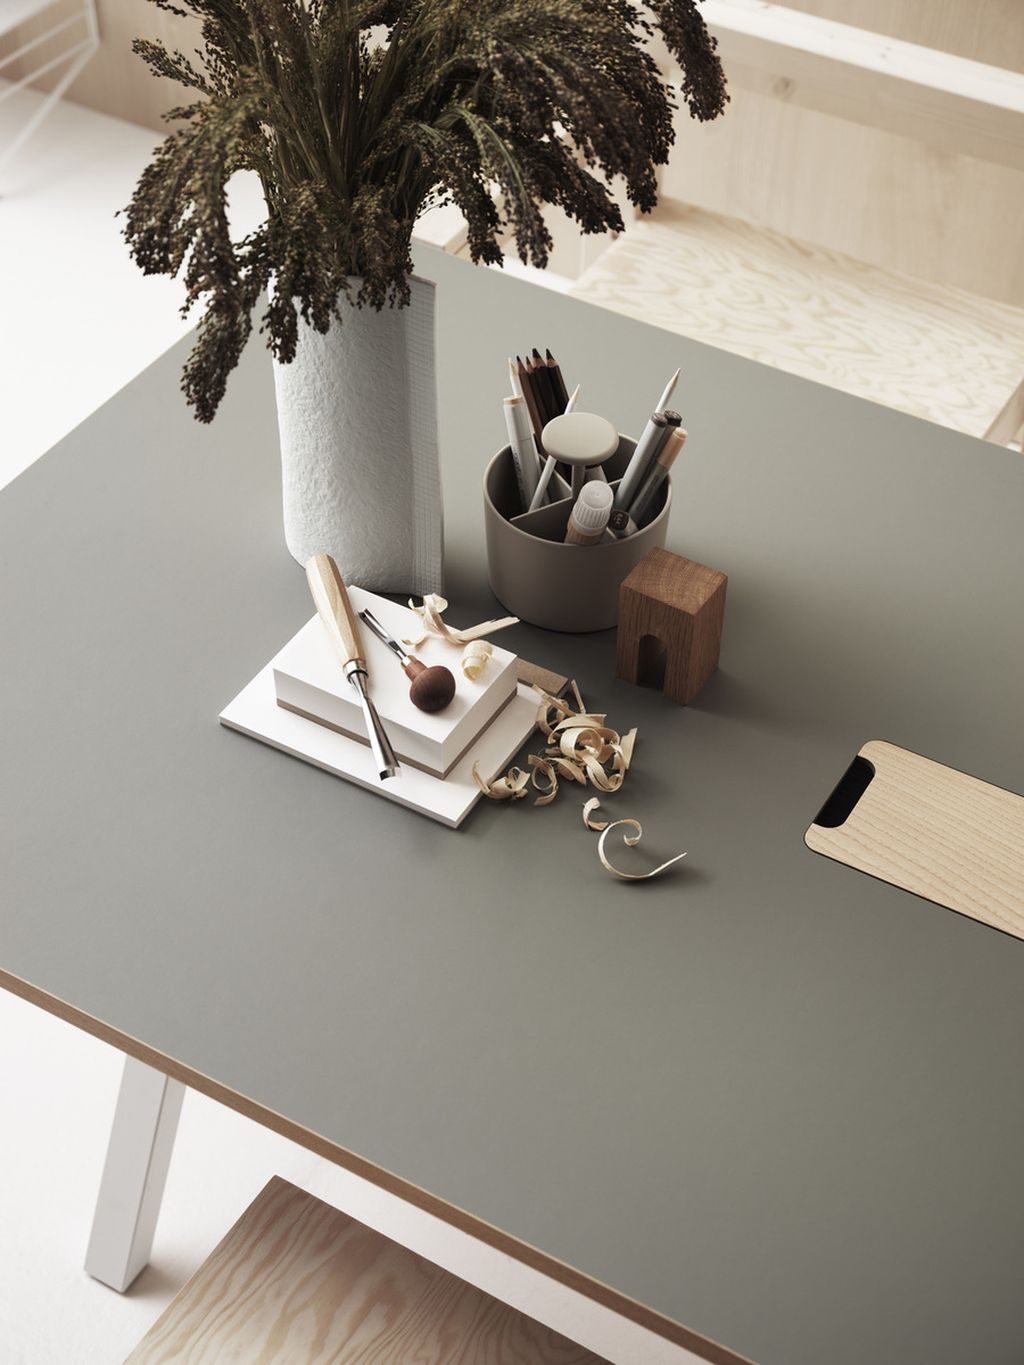 Tabla de trabajo ajustable de muebles de muebles de cuerda 78x160 cm, linóleo gris claro